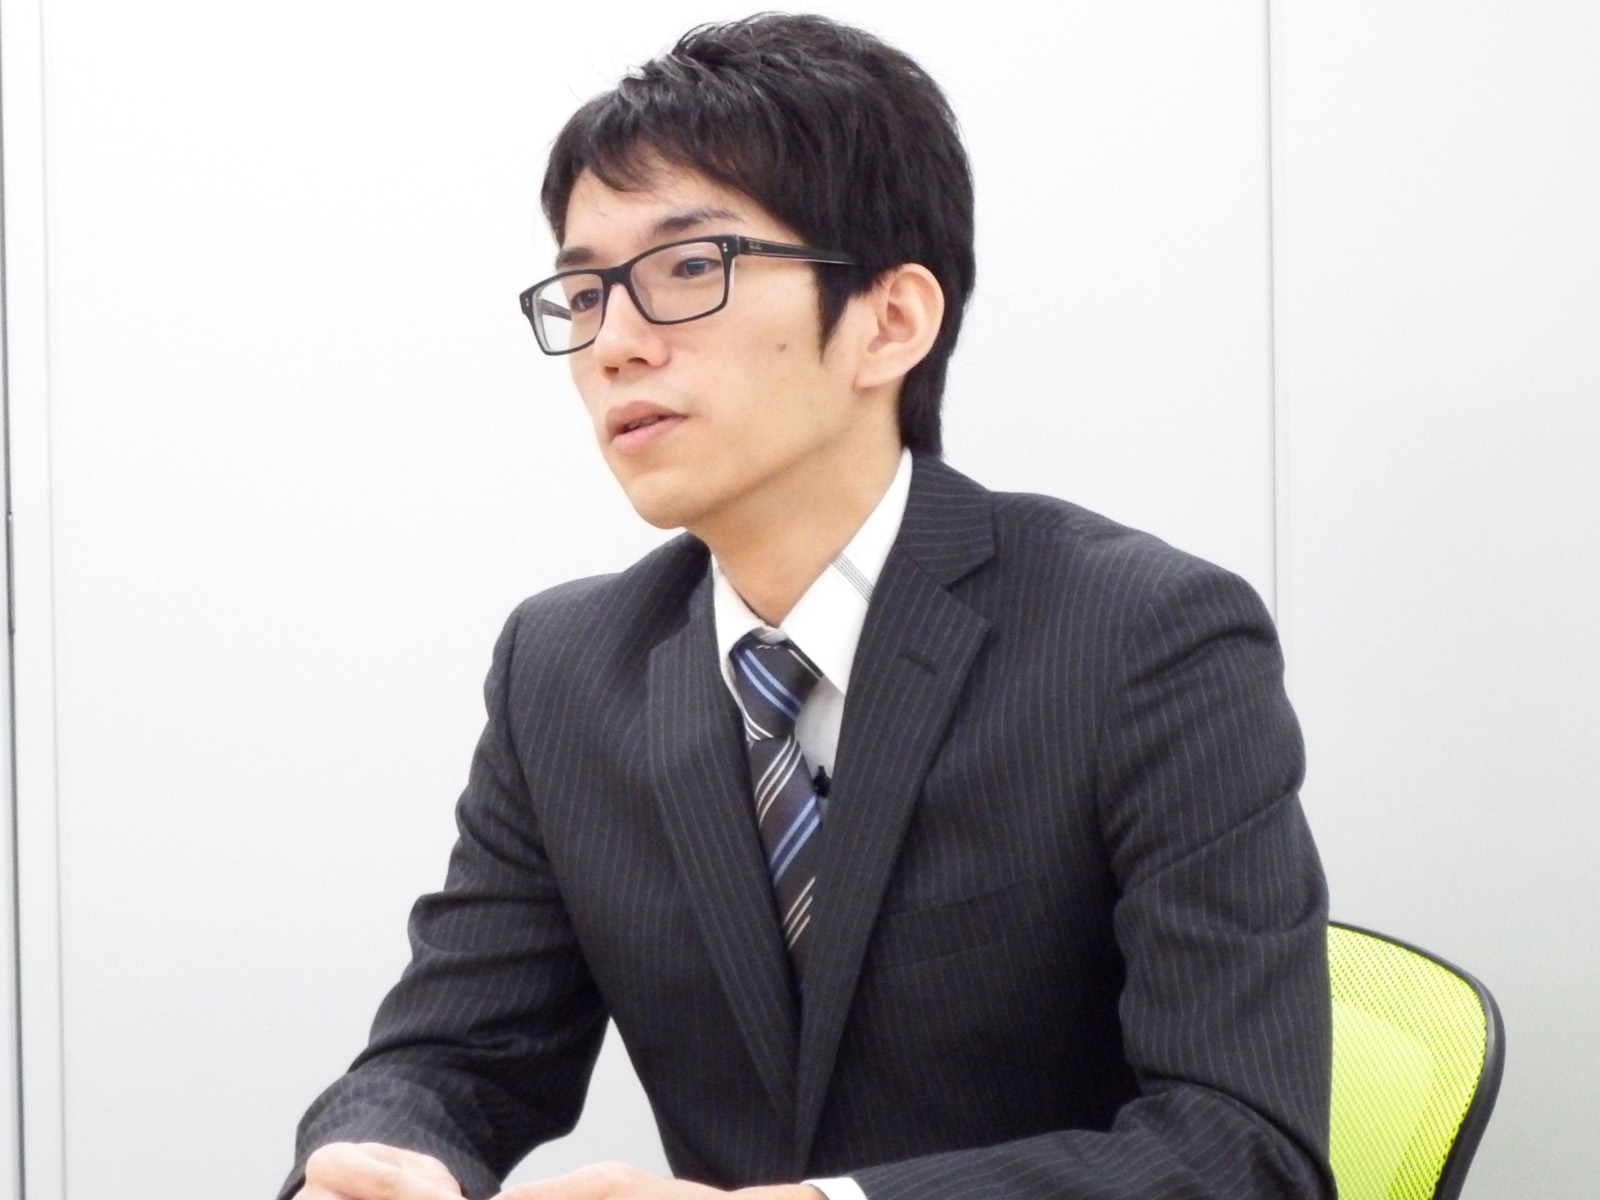 interview_matsuura2